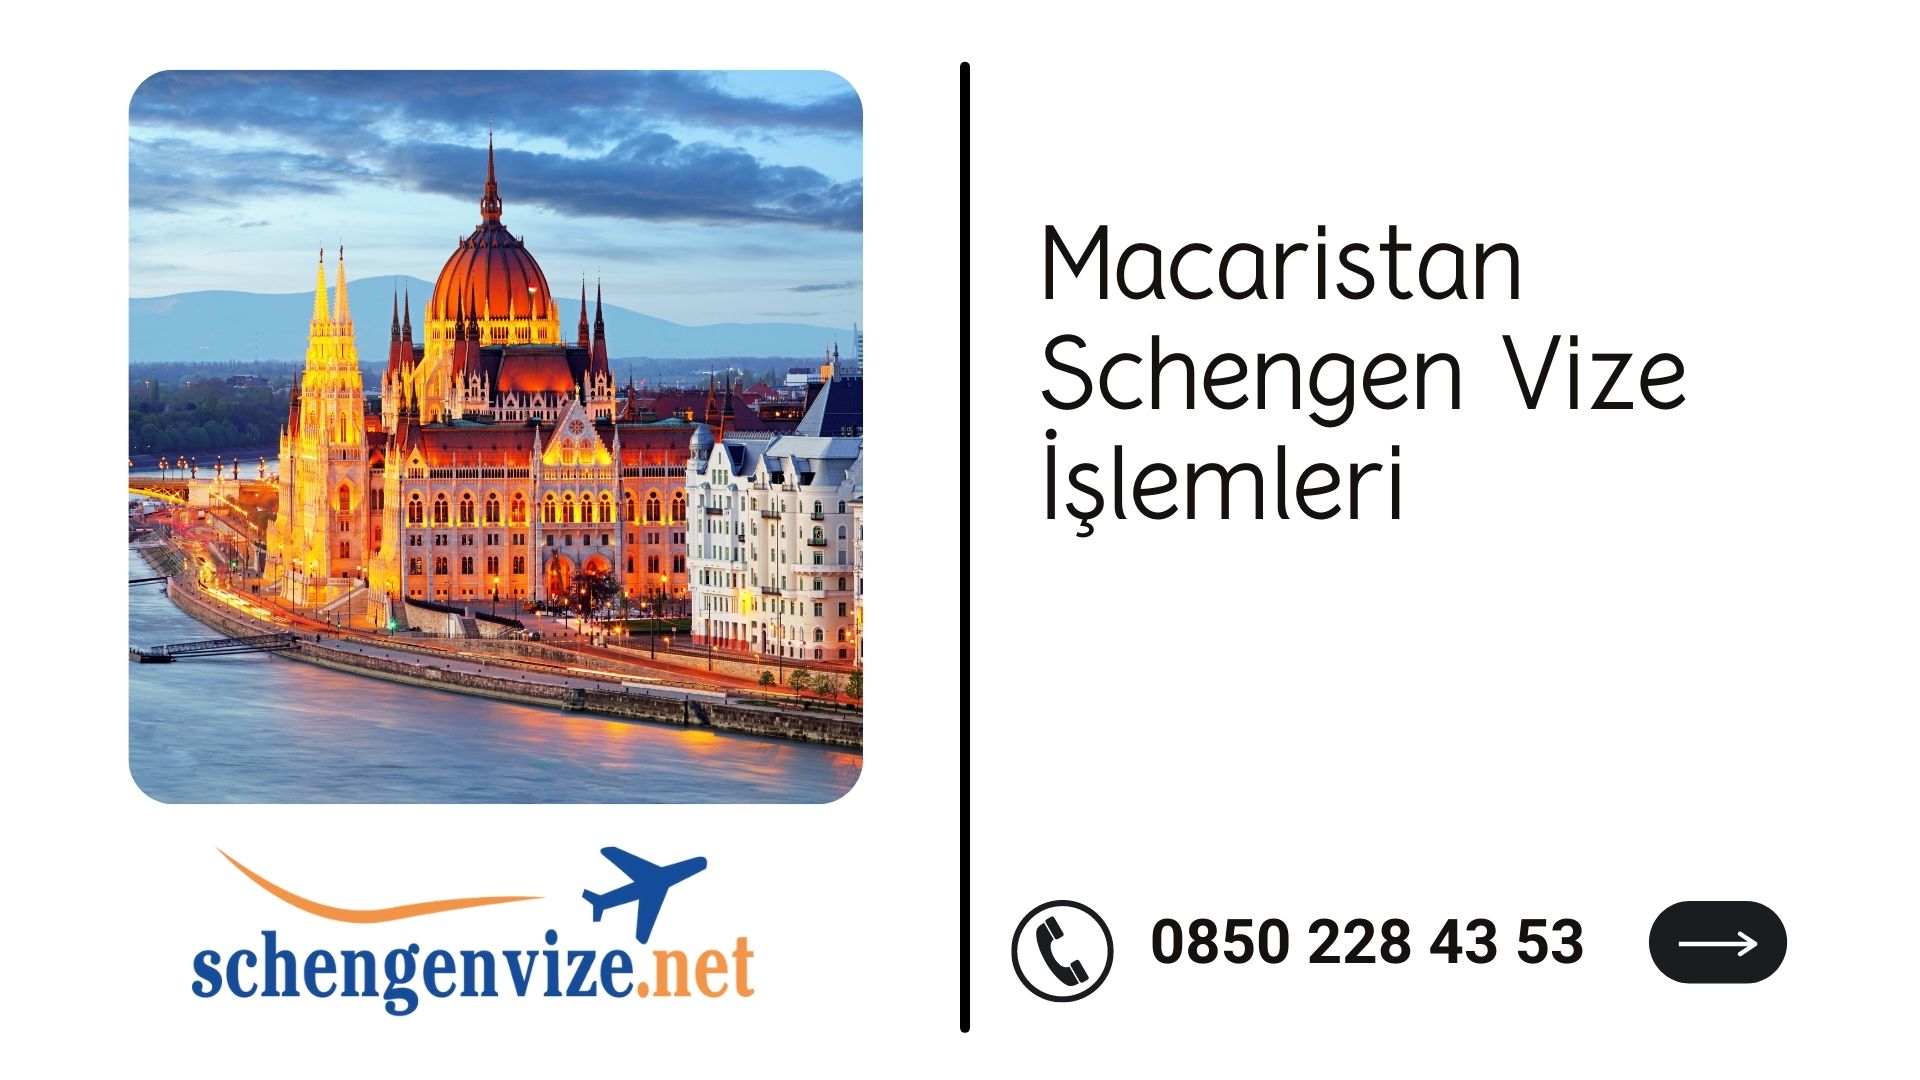 Macaristan Schengen Vize İşlemleri